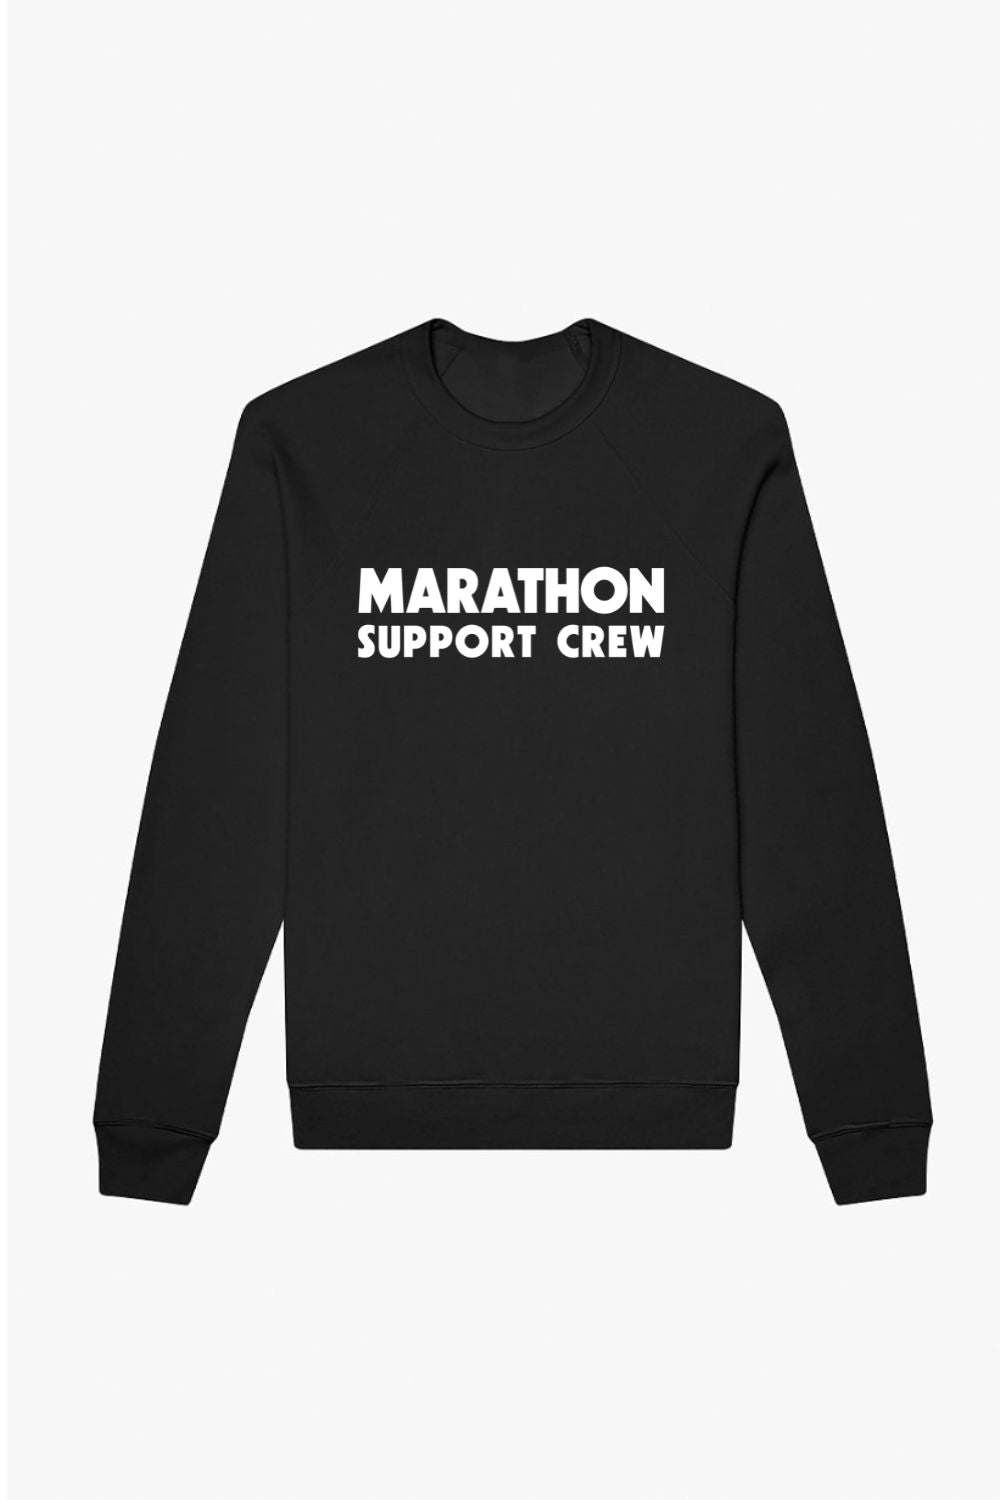 Marathon Support Crew Sweatshirt